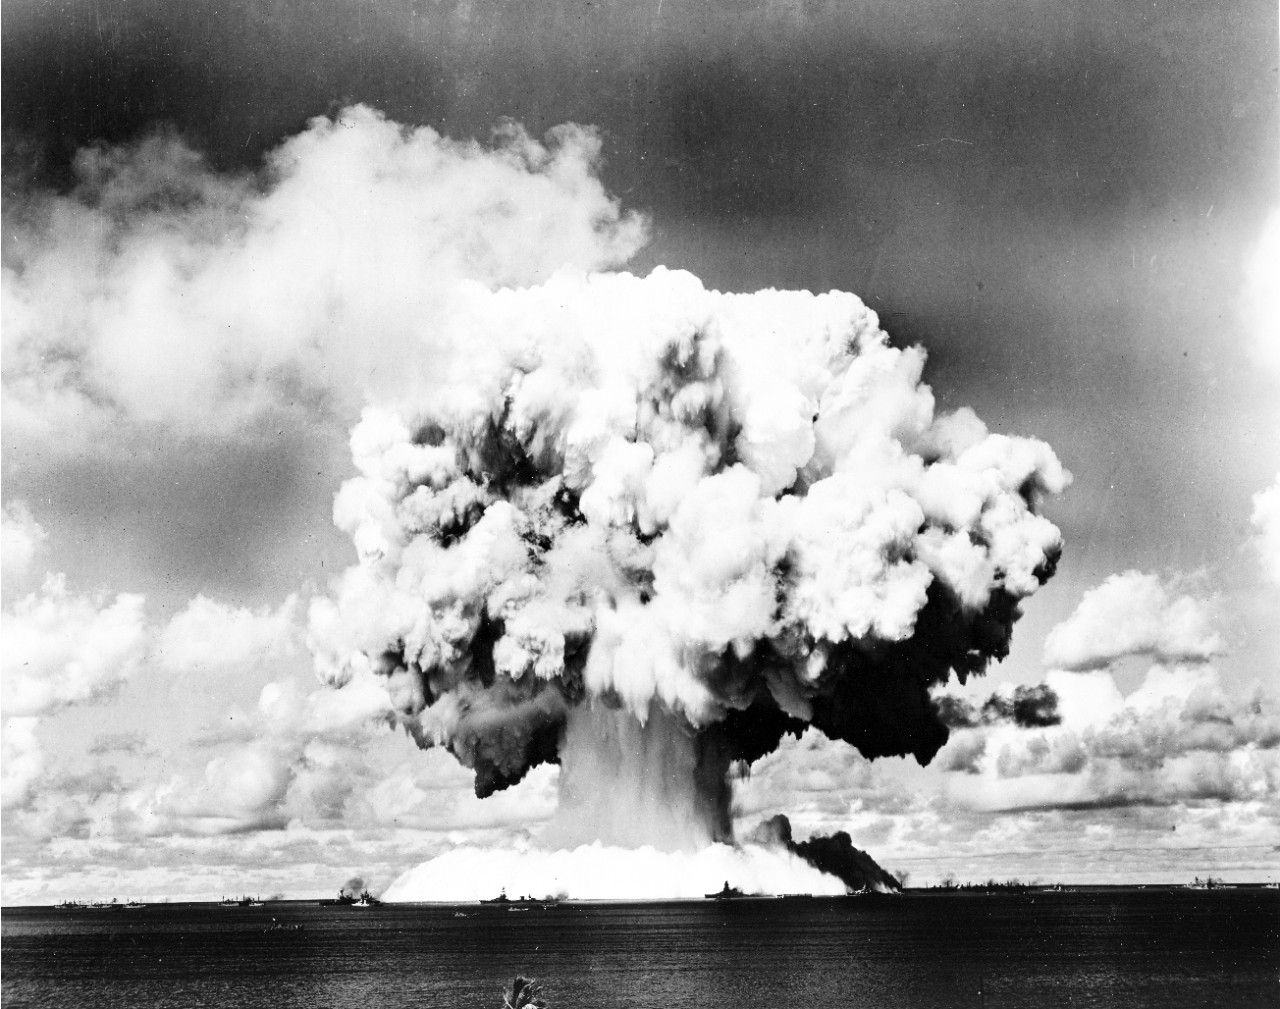 Bikini Island atomic bomb testing